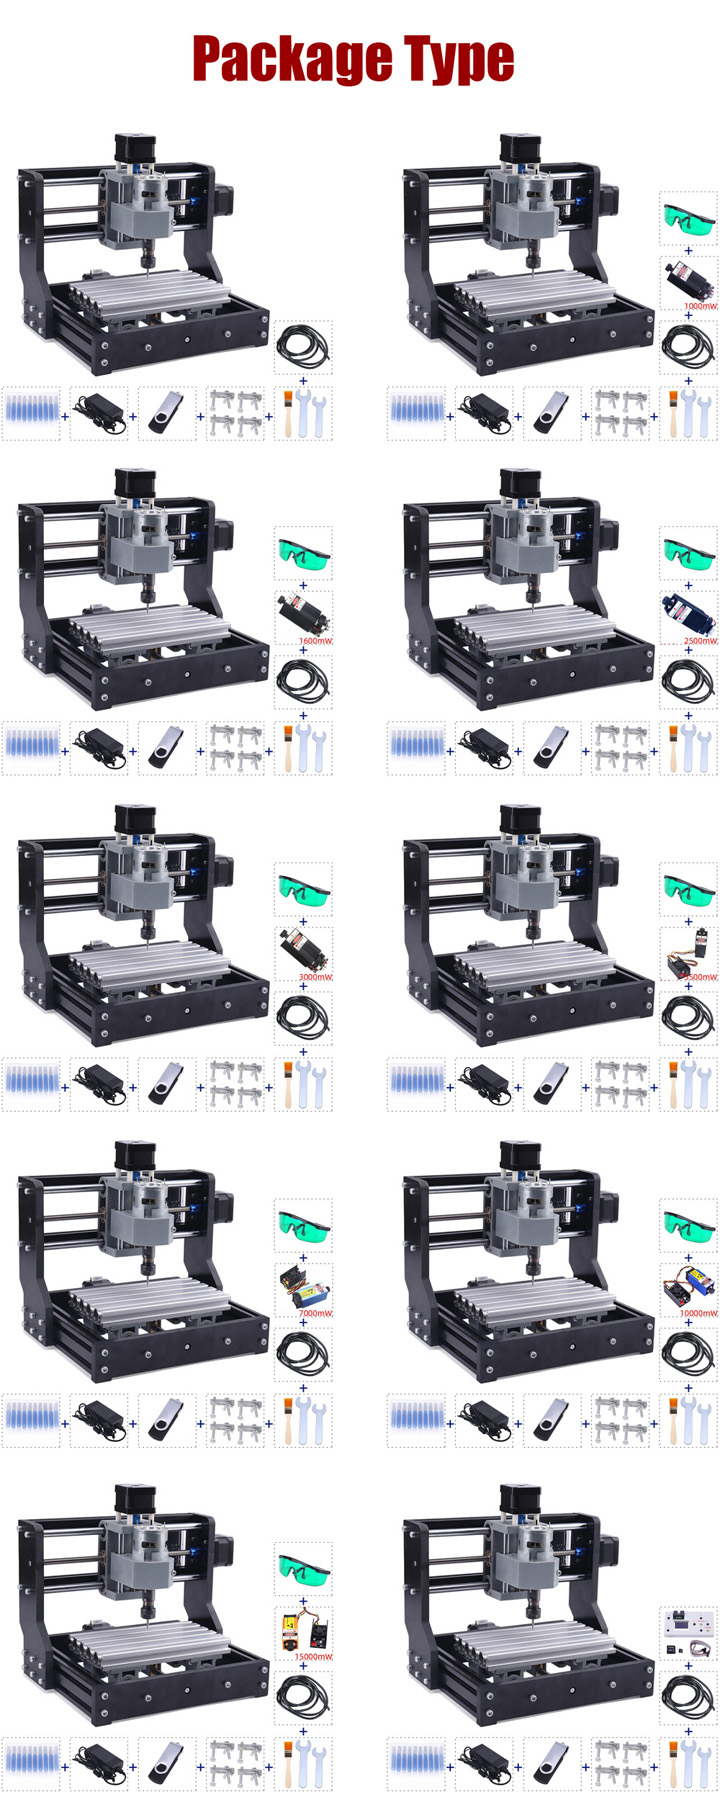 macchina per incisione laser CNC